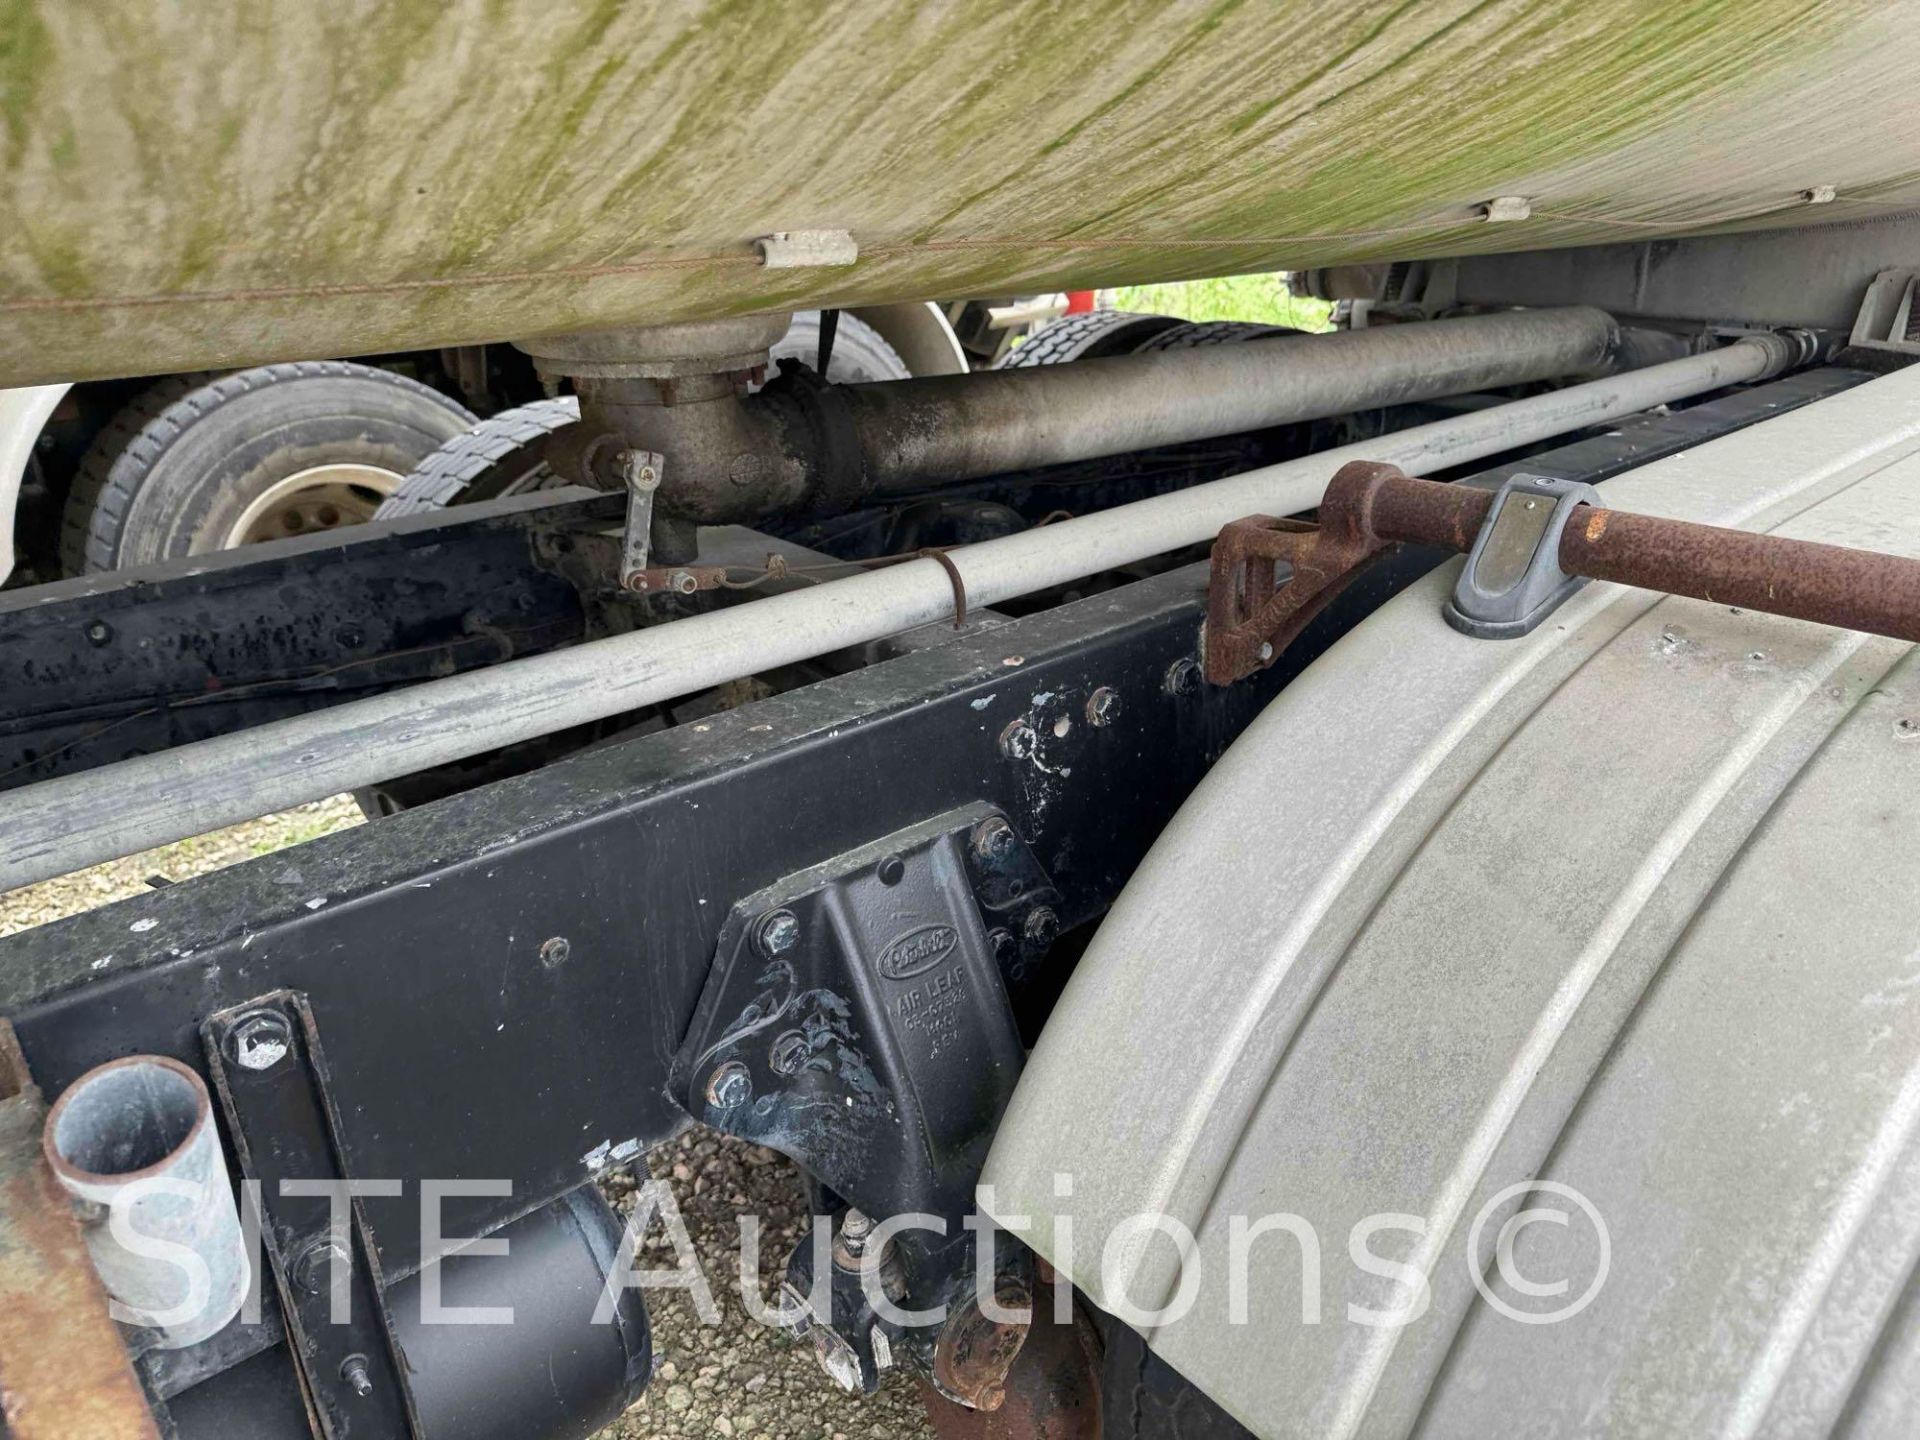 1998 Peterbilt 377 T/A Fuel Truck - Image 36 of 52